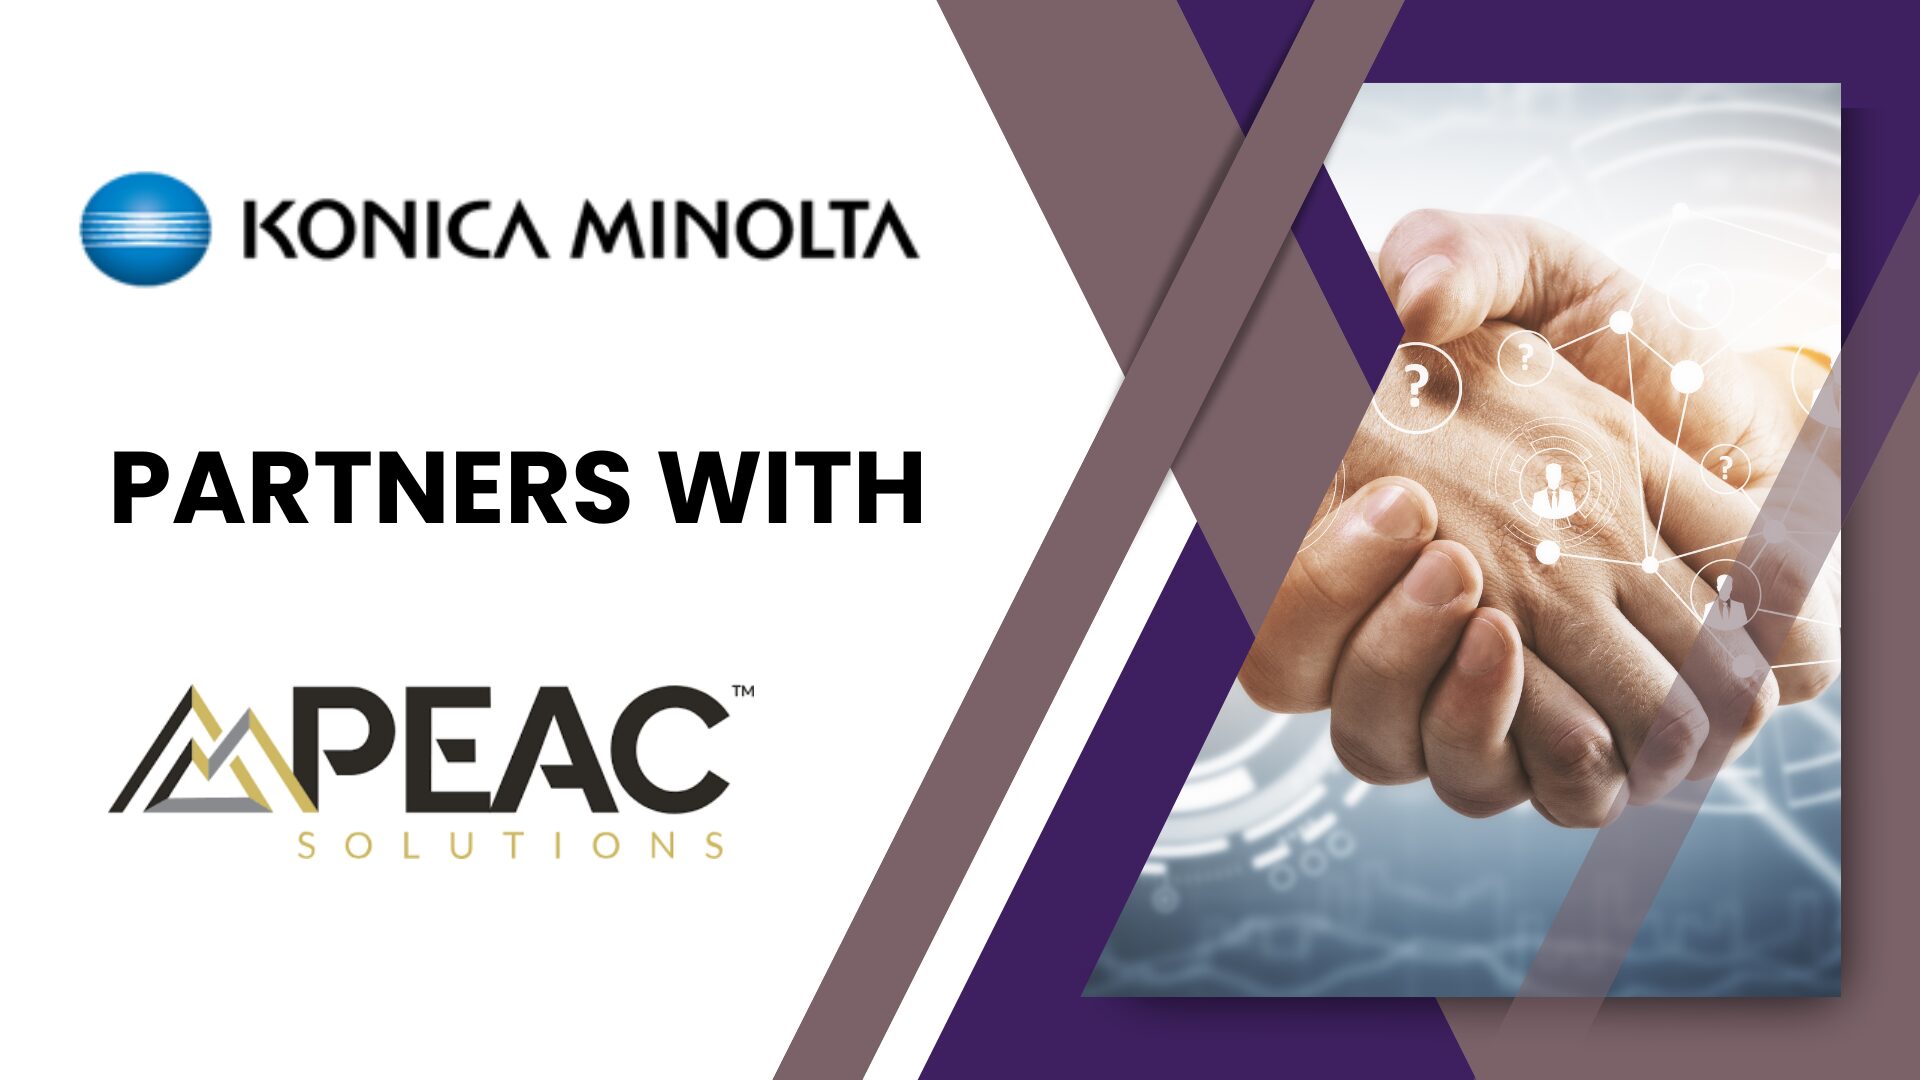 PEAC Partnership